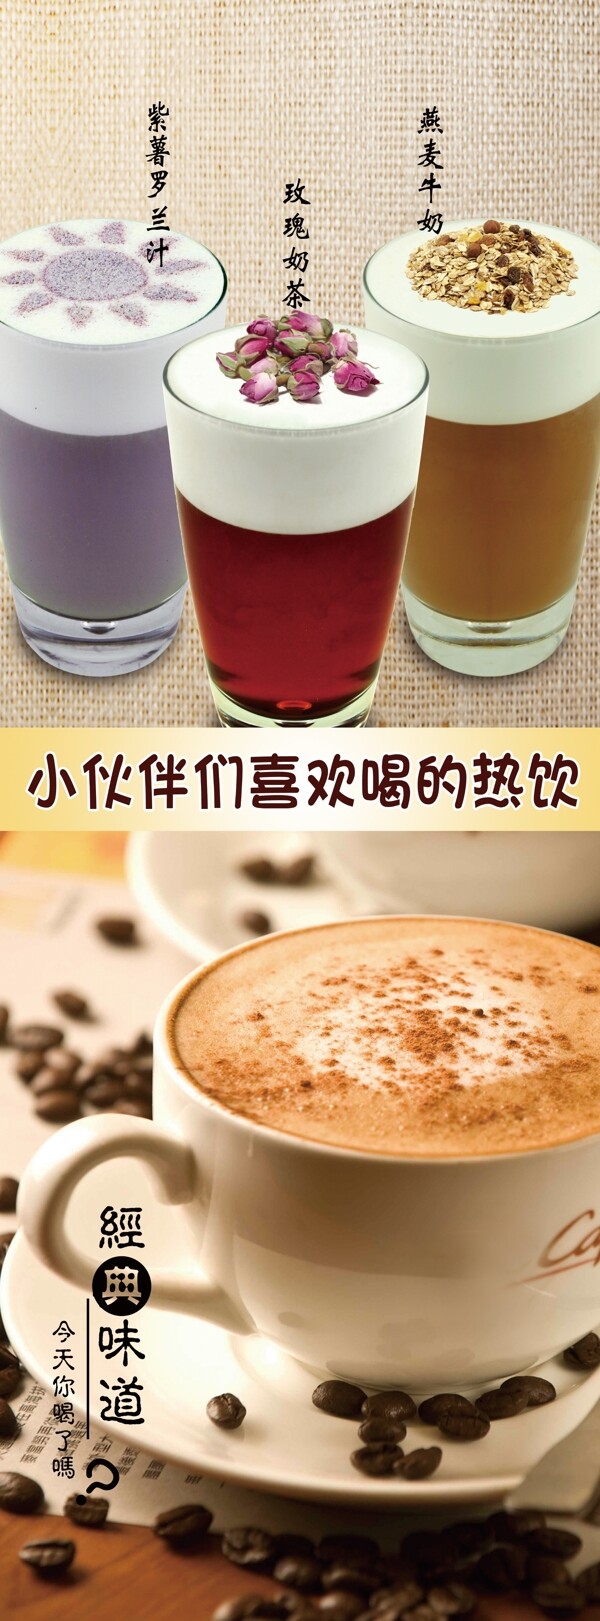 奶茶咖啡海报